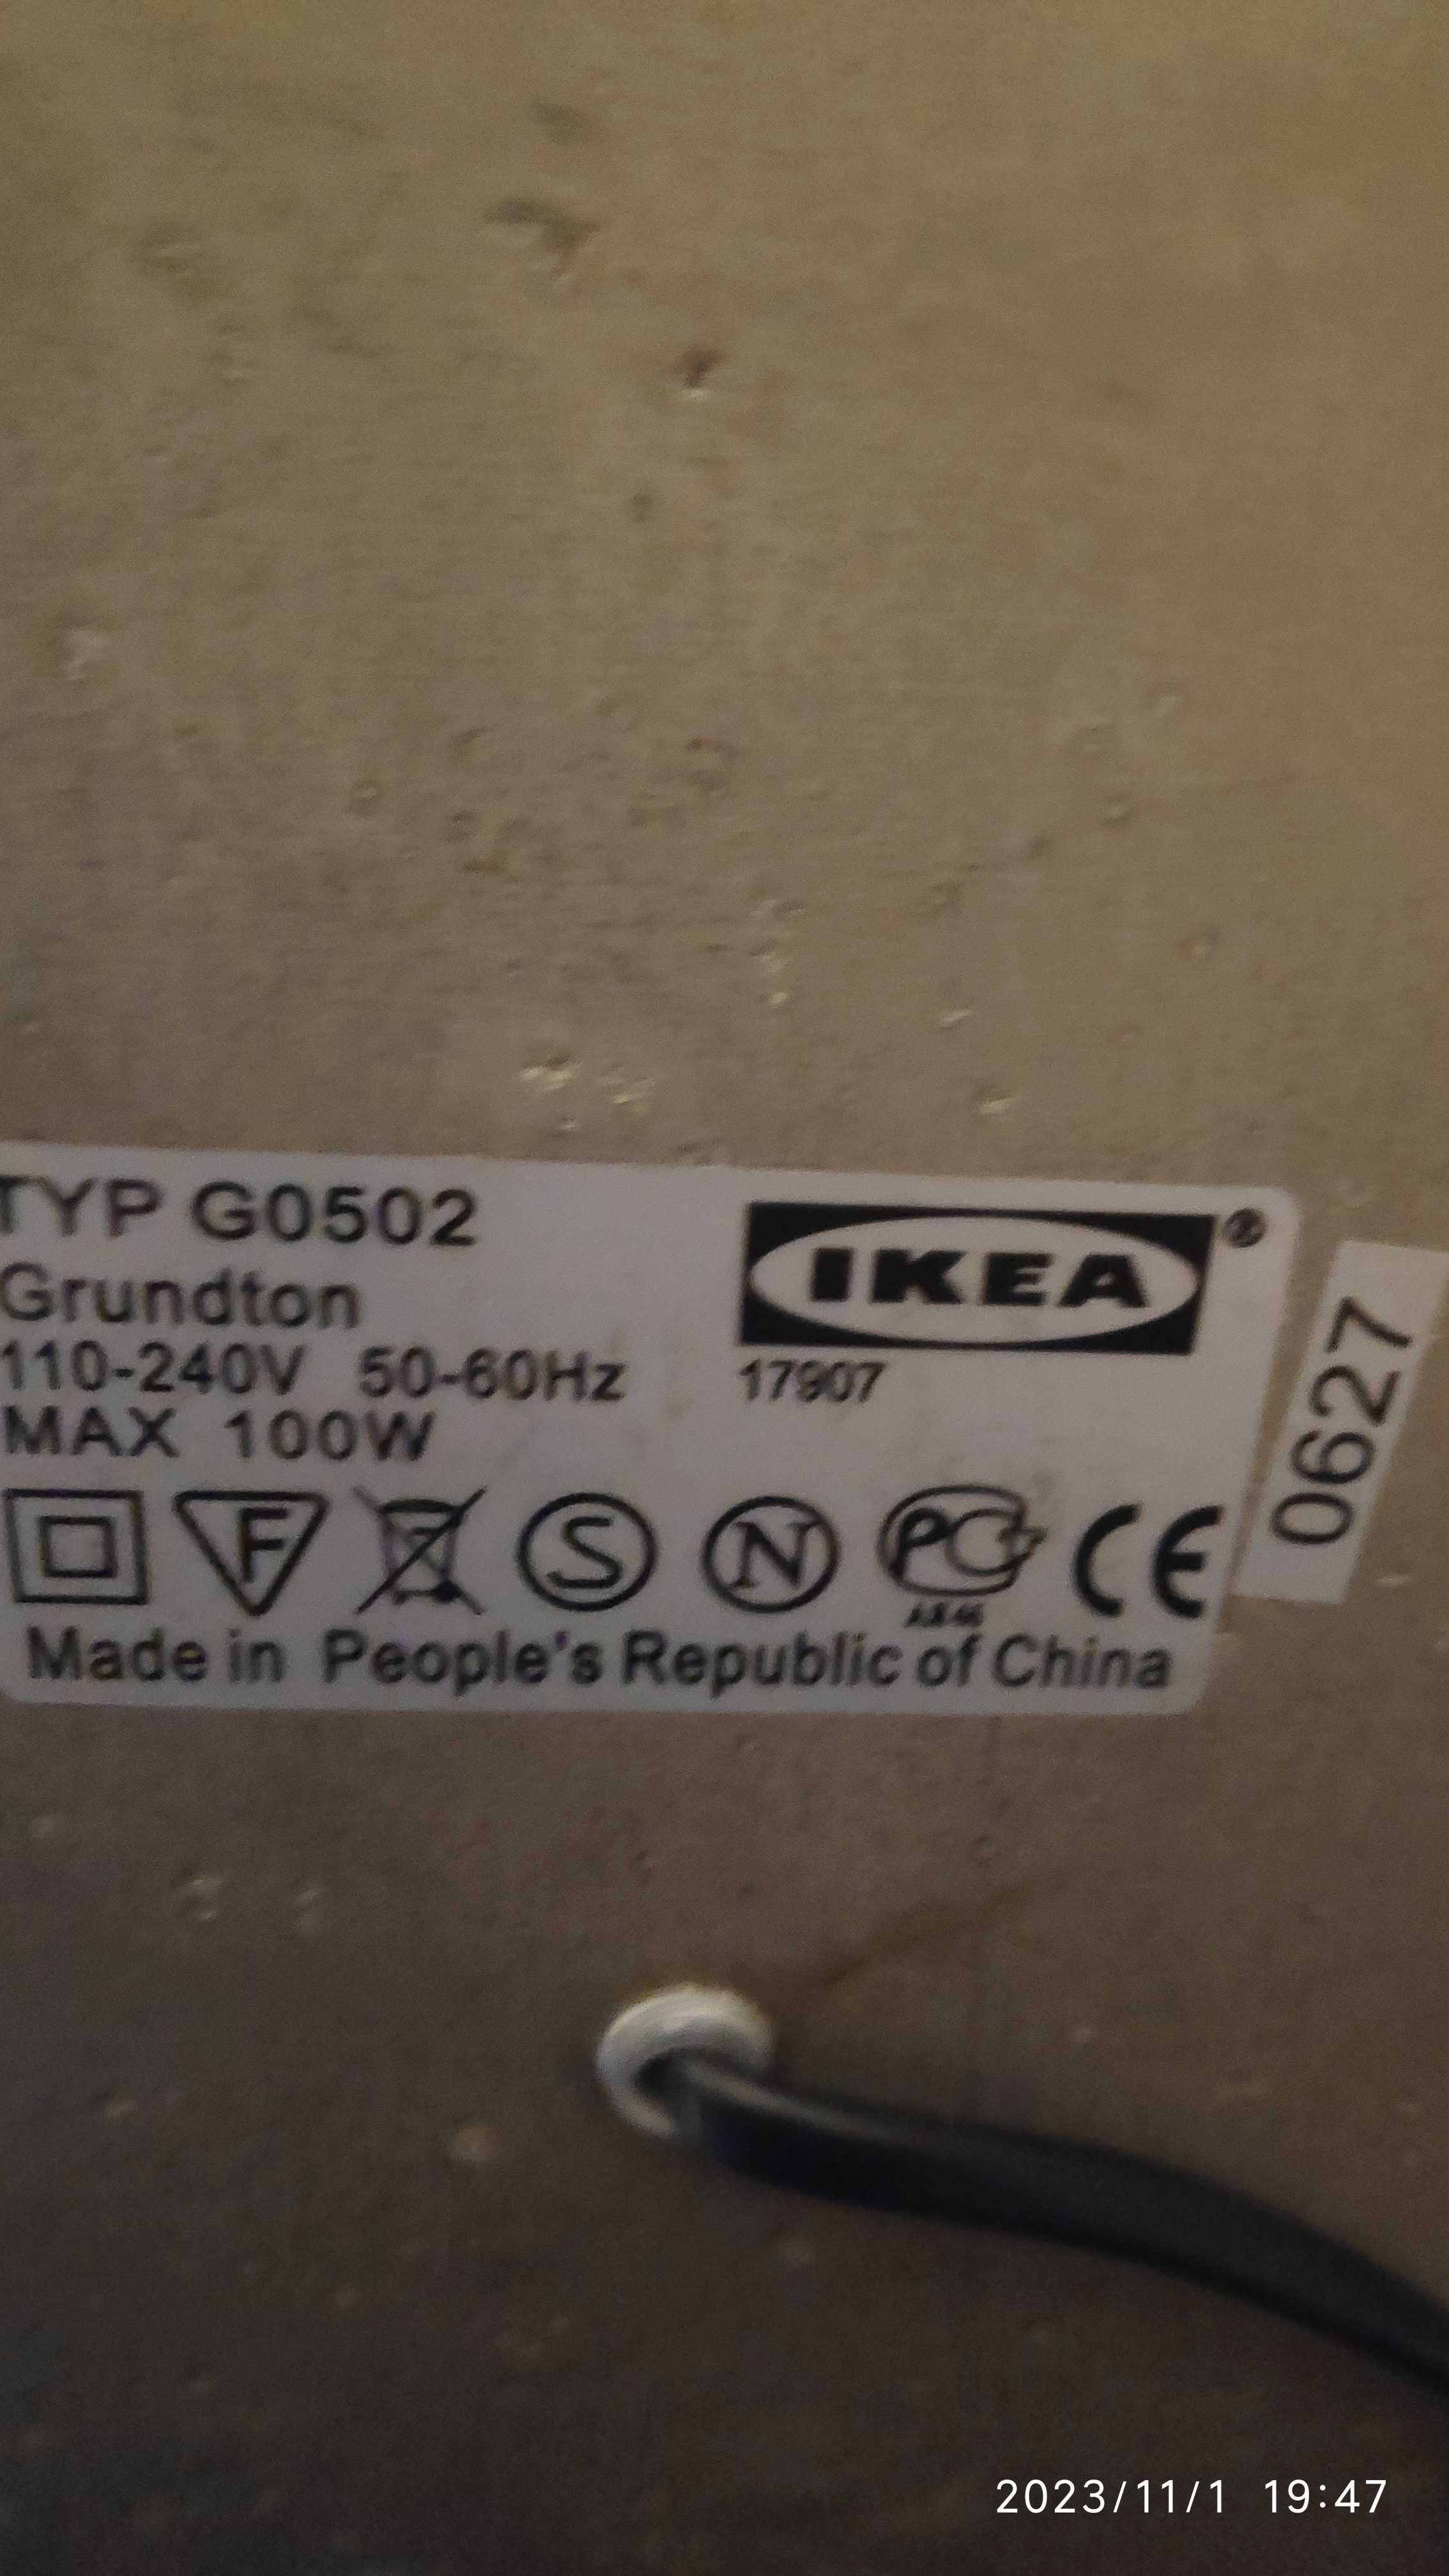 Lampa podłogowa stojąca Ikea Grundton używana